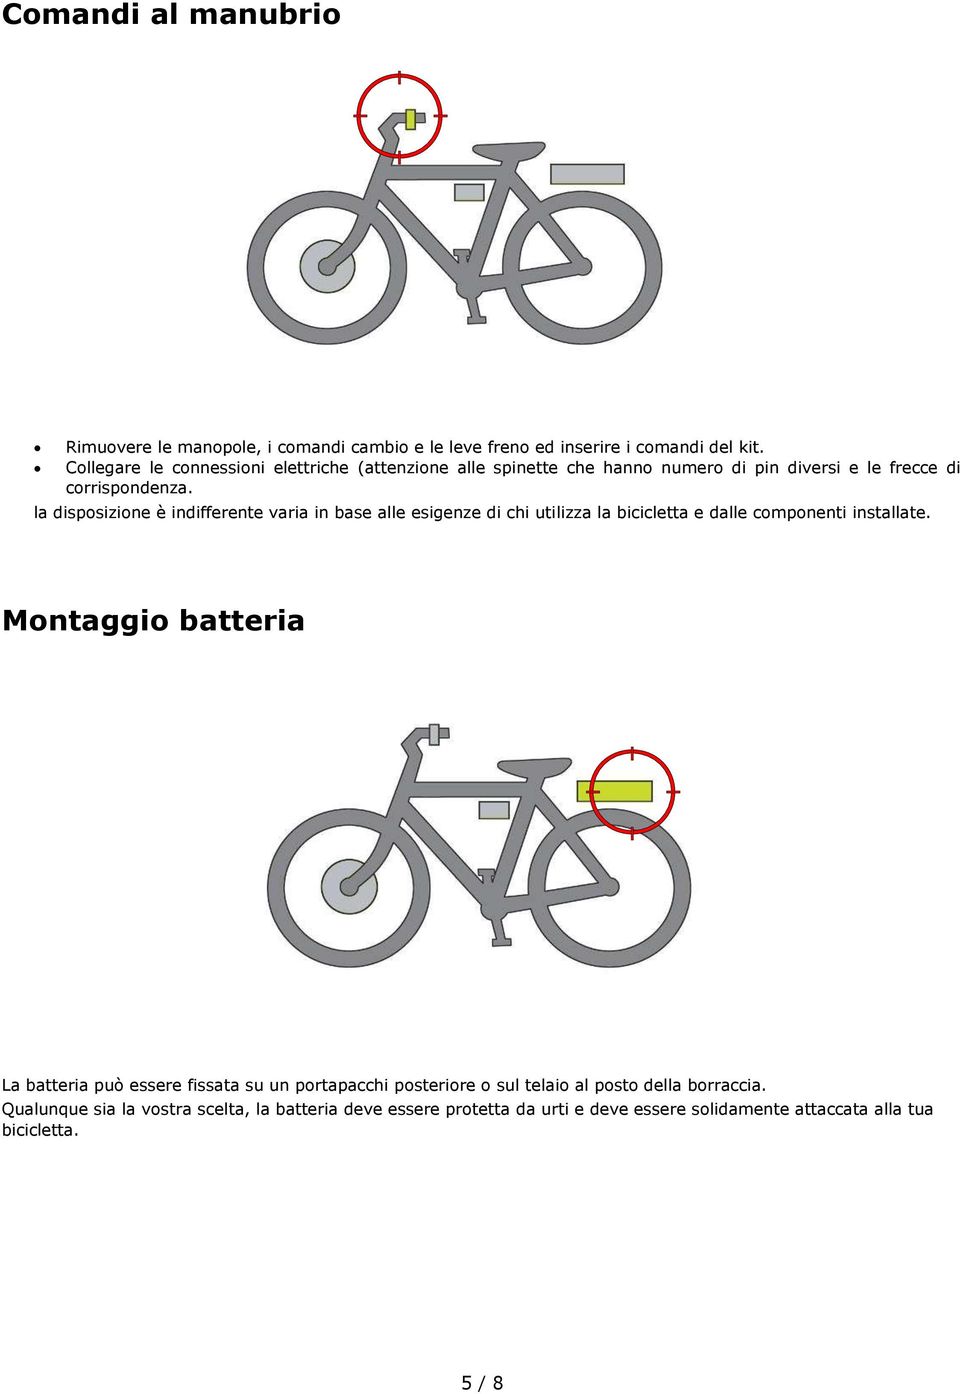 la disposizione è indifferente varia in base alle esigenze di chi utilizza la bicicletta e dalle componenti installate.